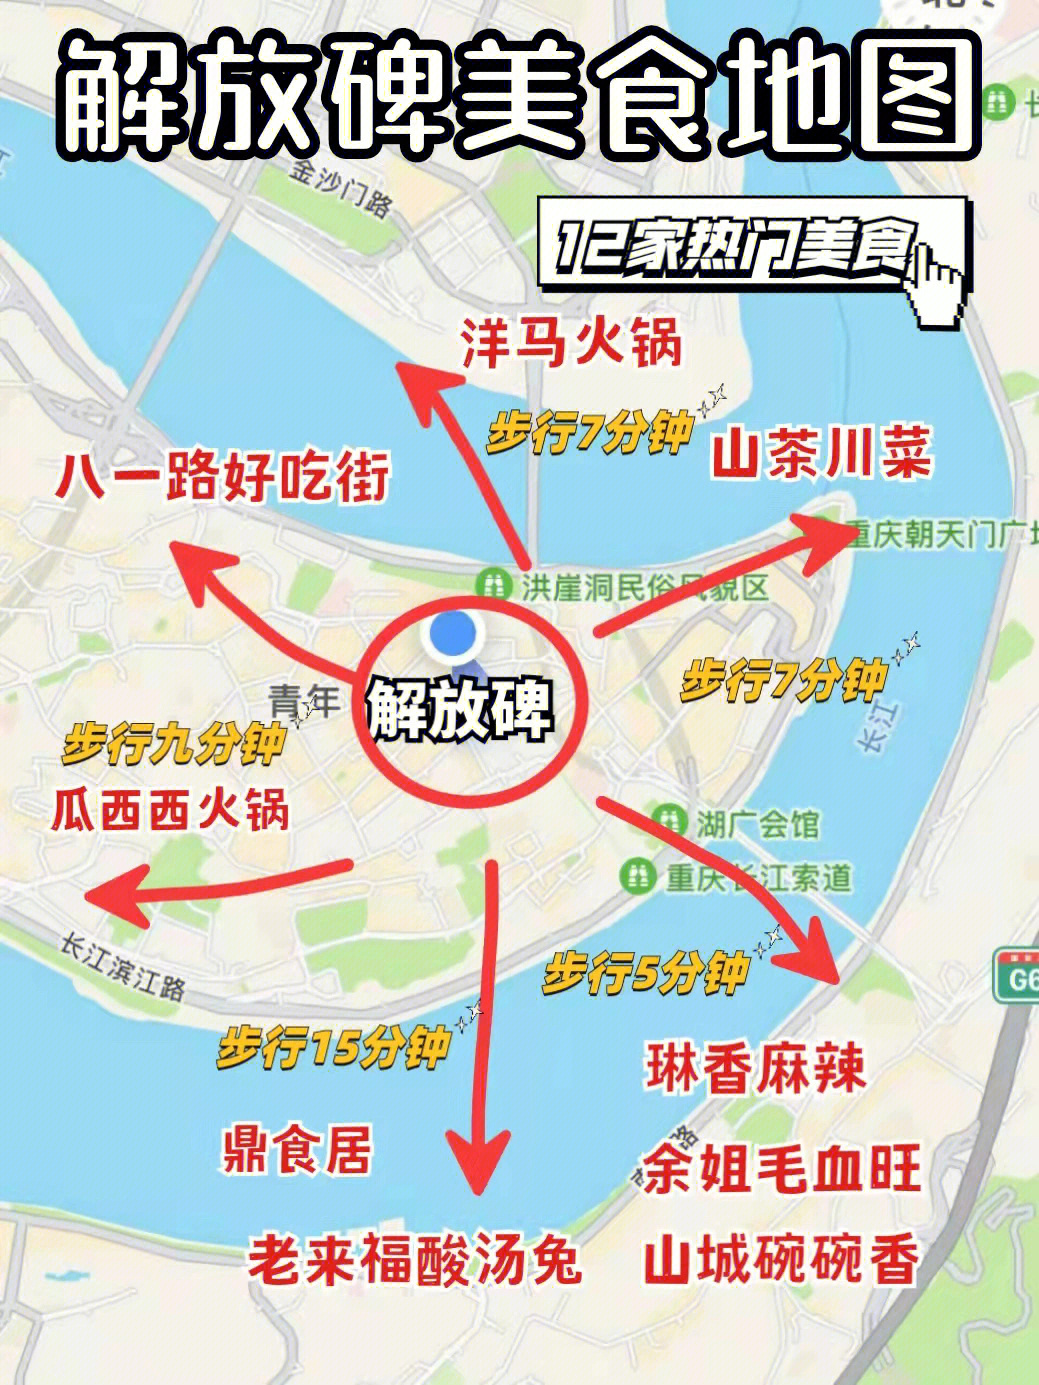 重庆美食地图高清图片